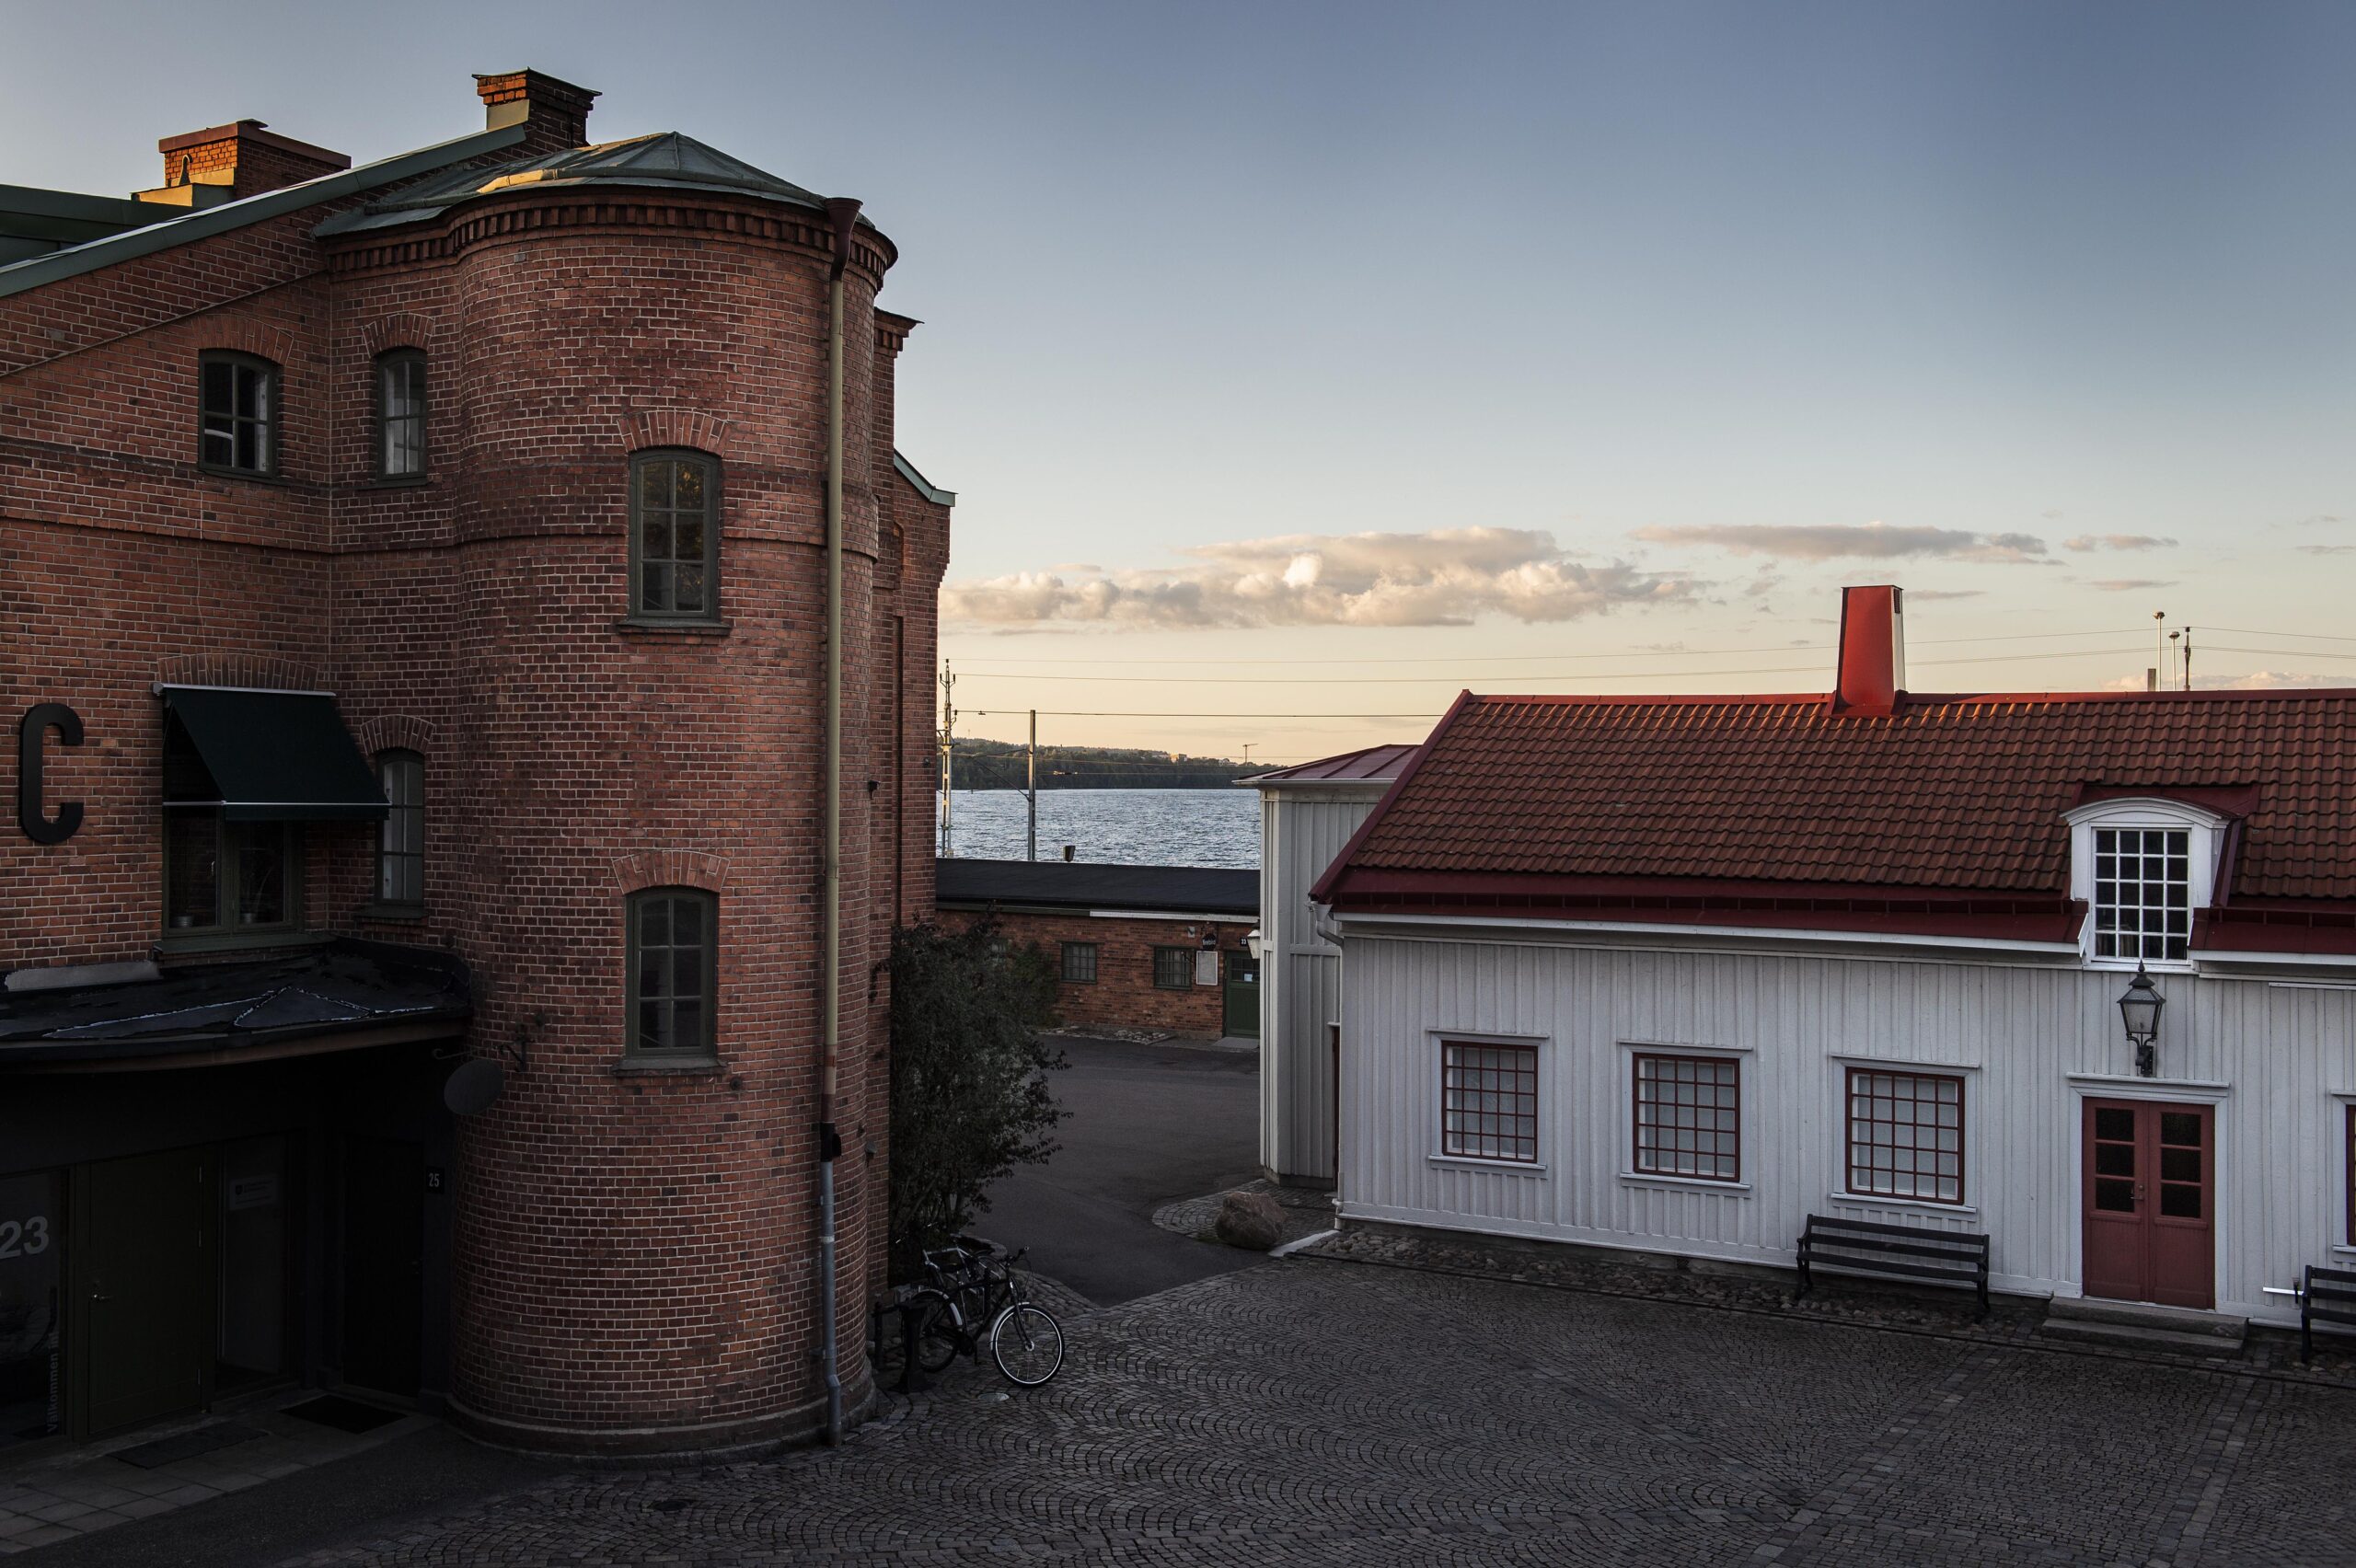 Hus i Kiruna av Anna Hållams